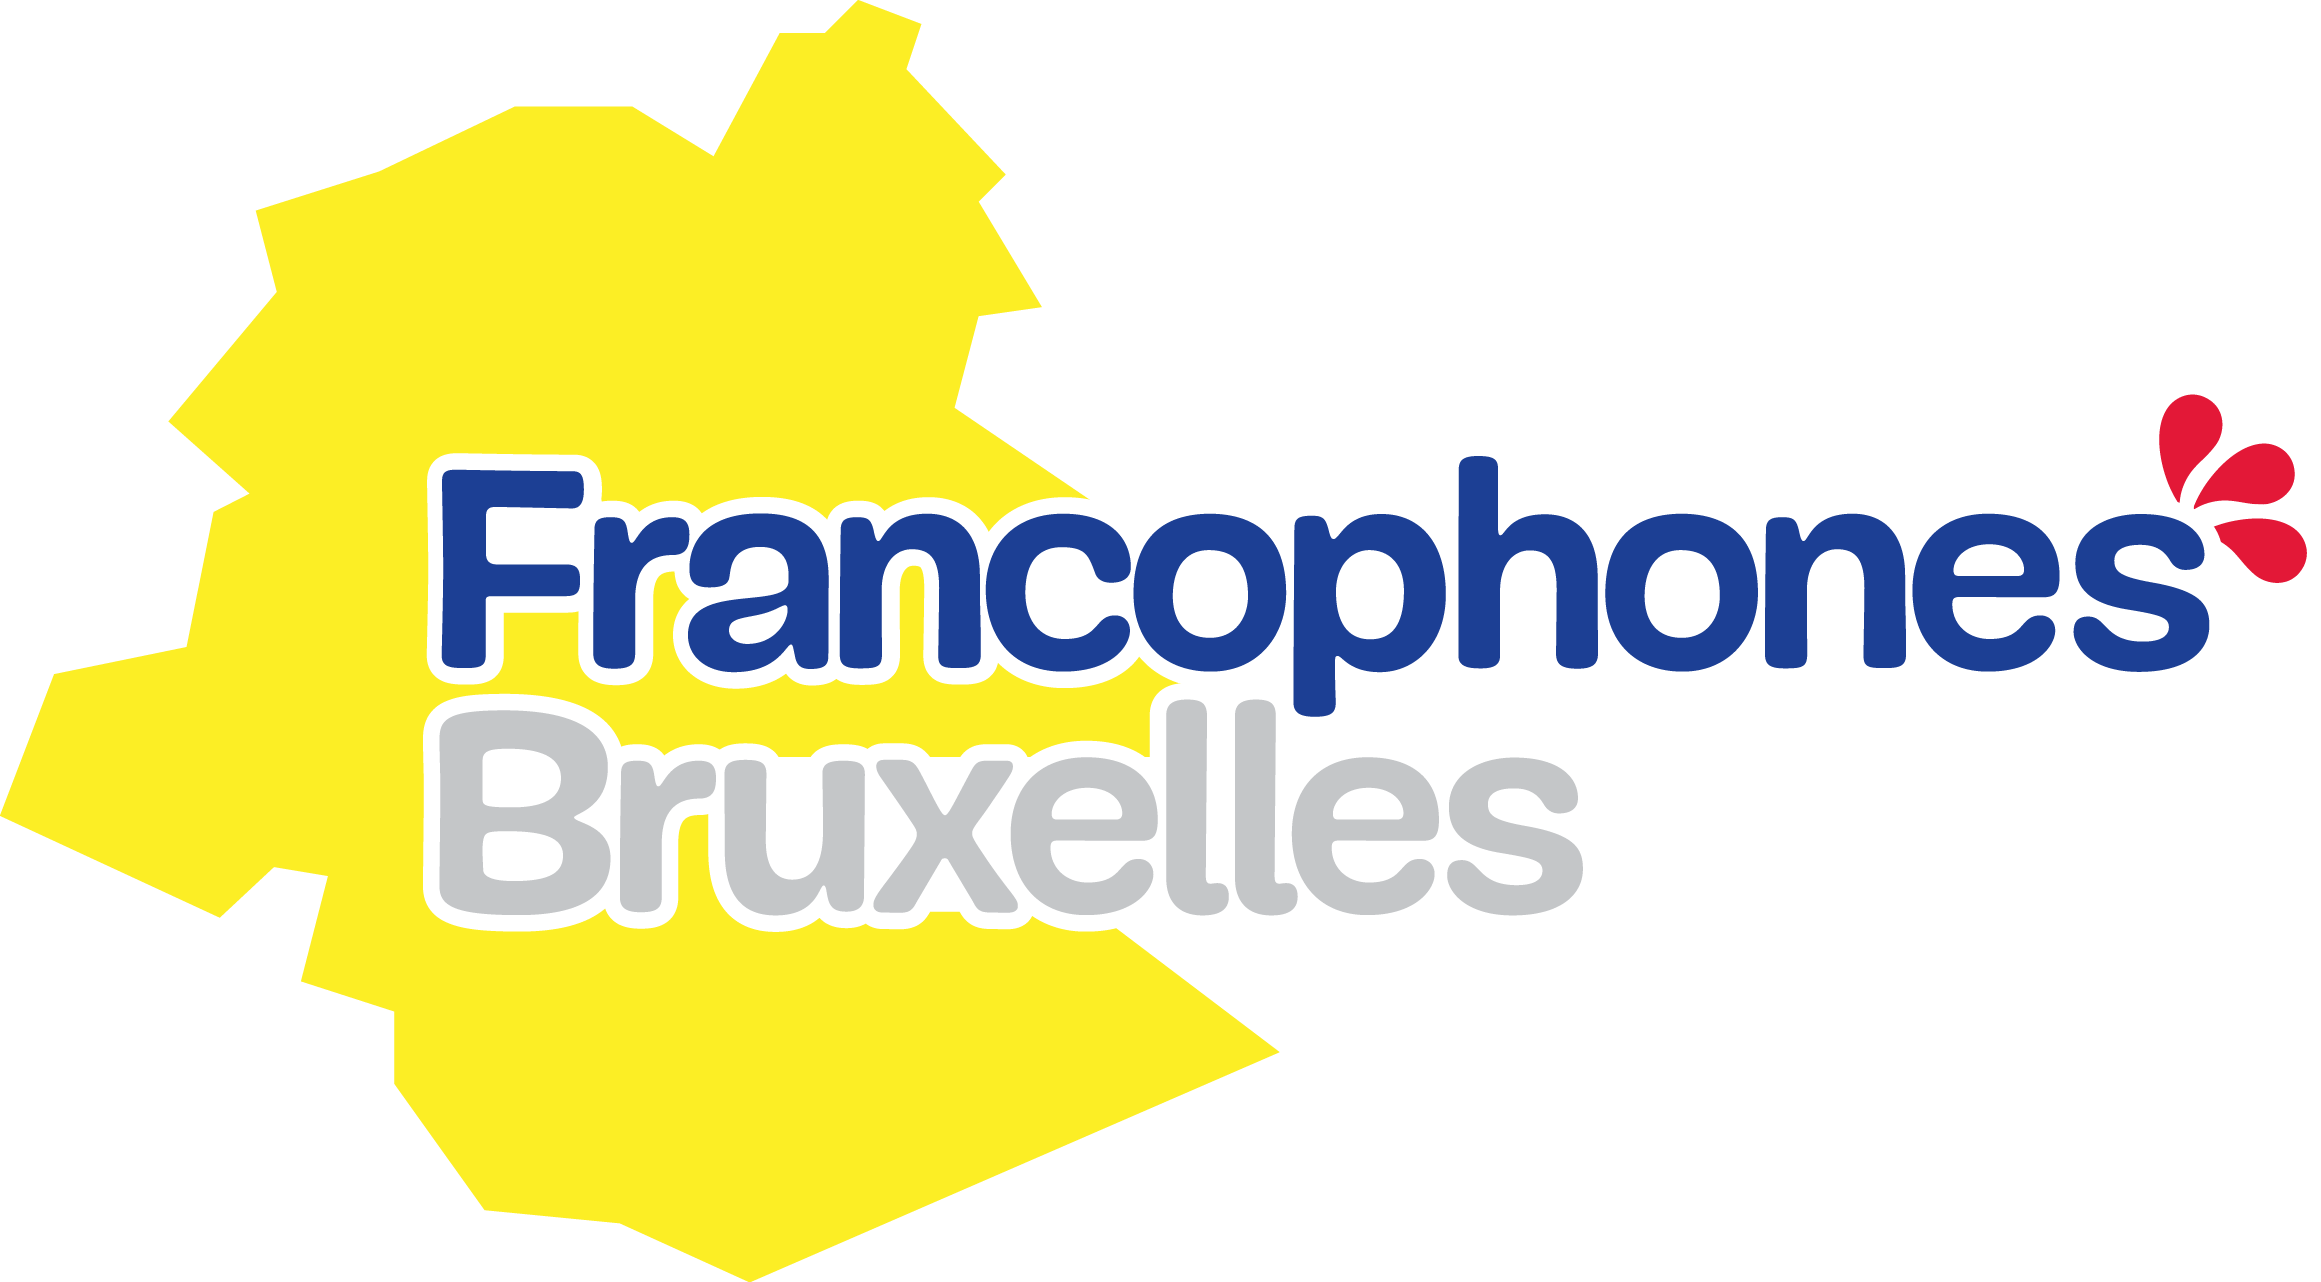 Francophones Bruxelles - Le gouvernement francophone bruxellois